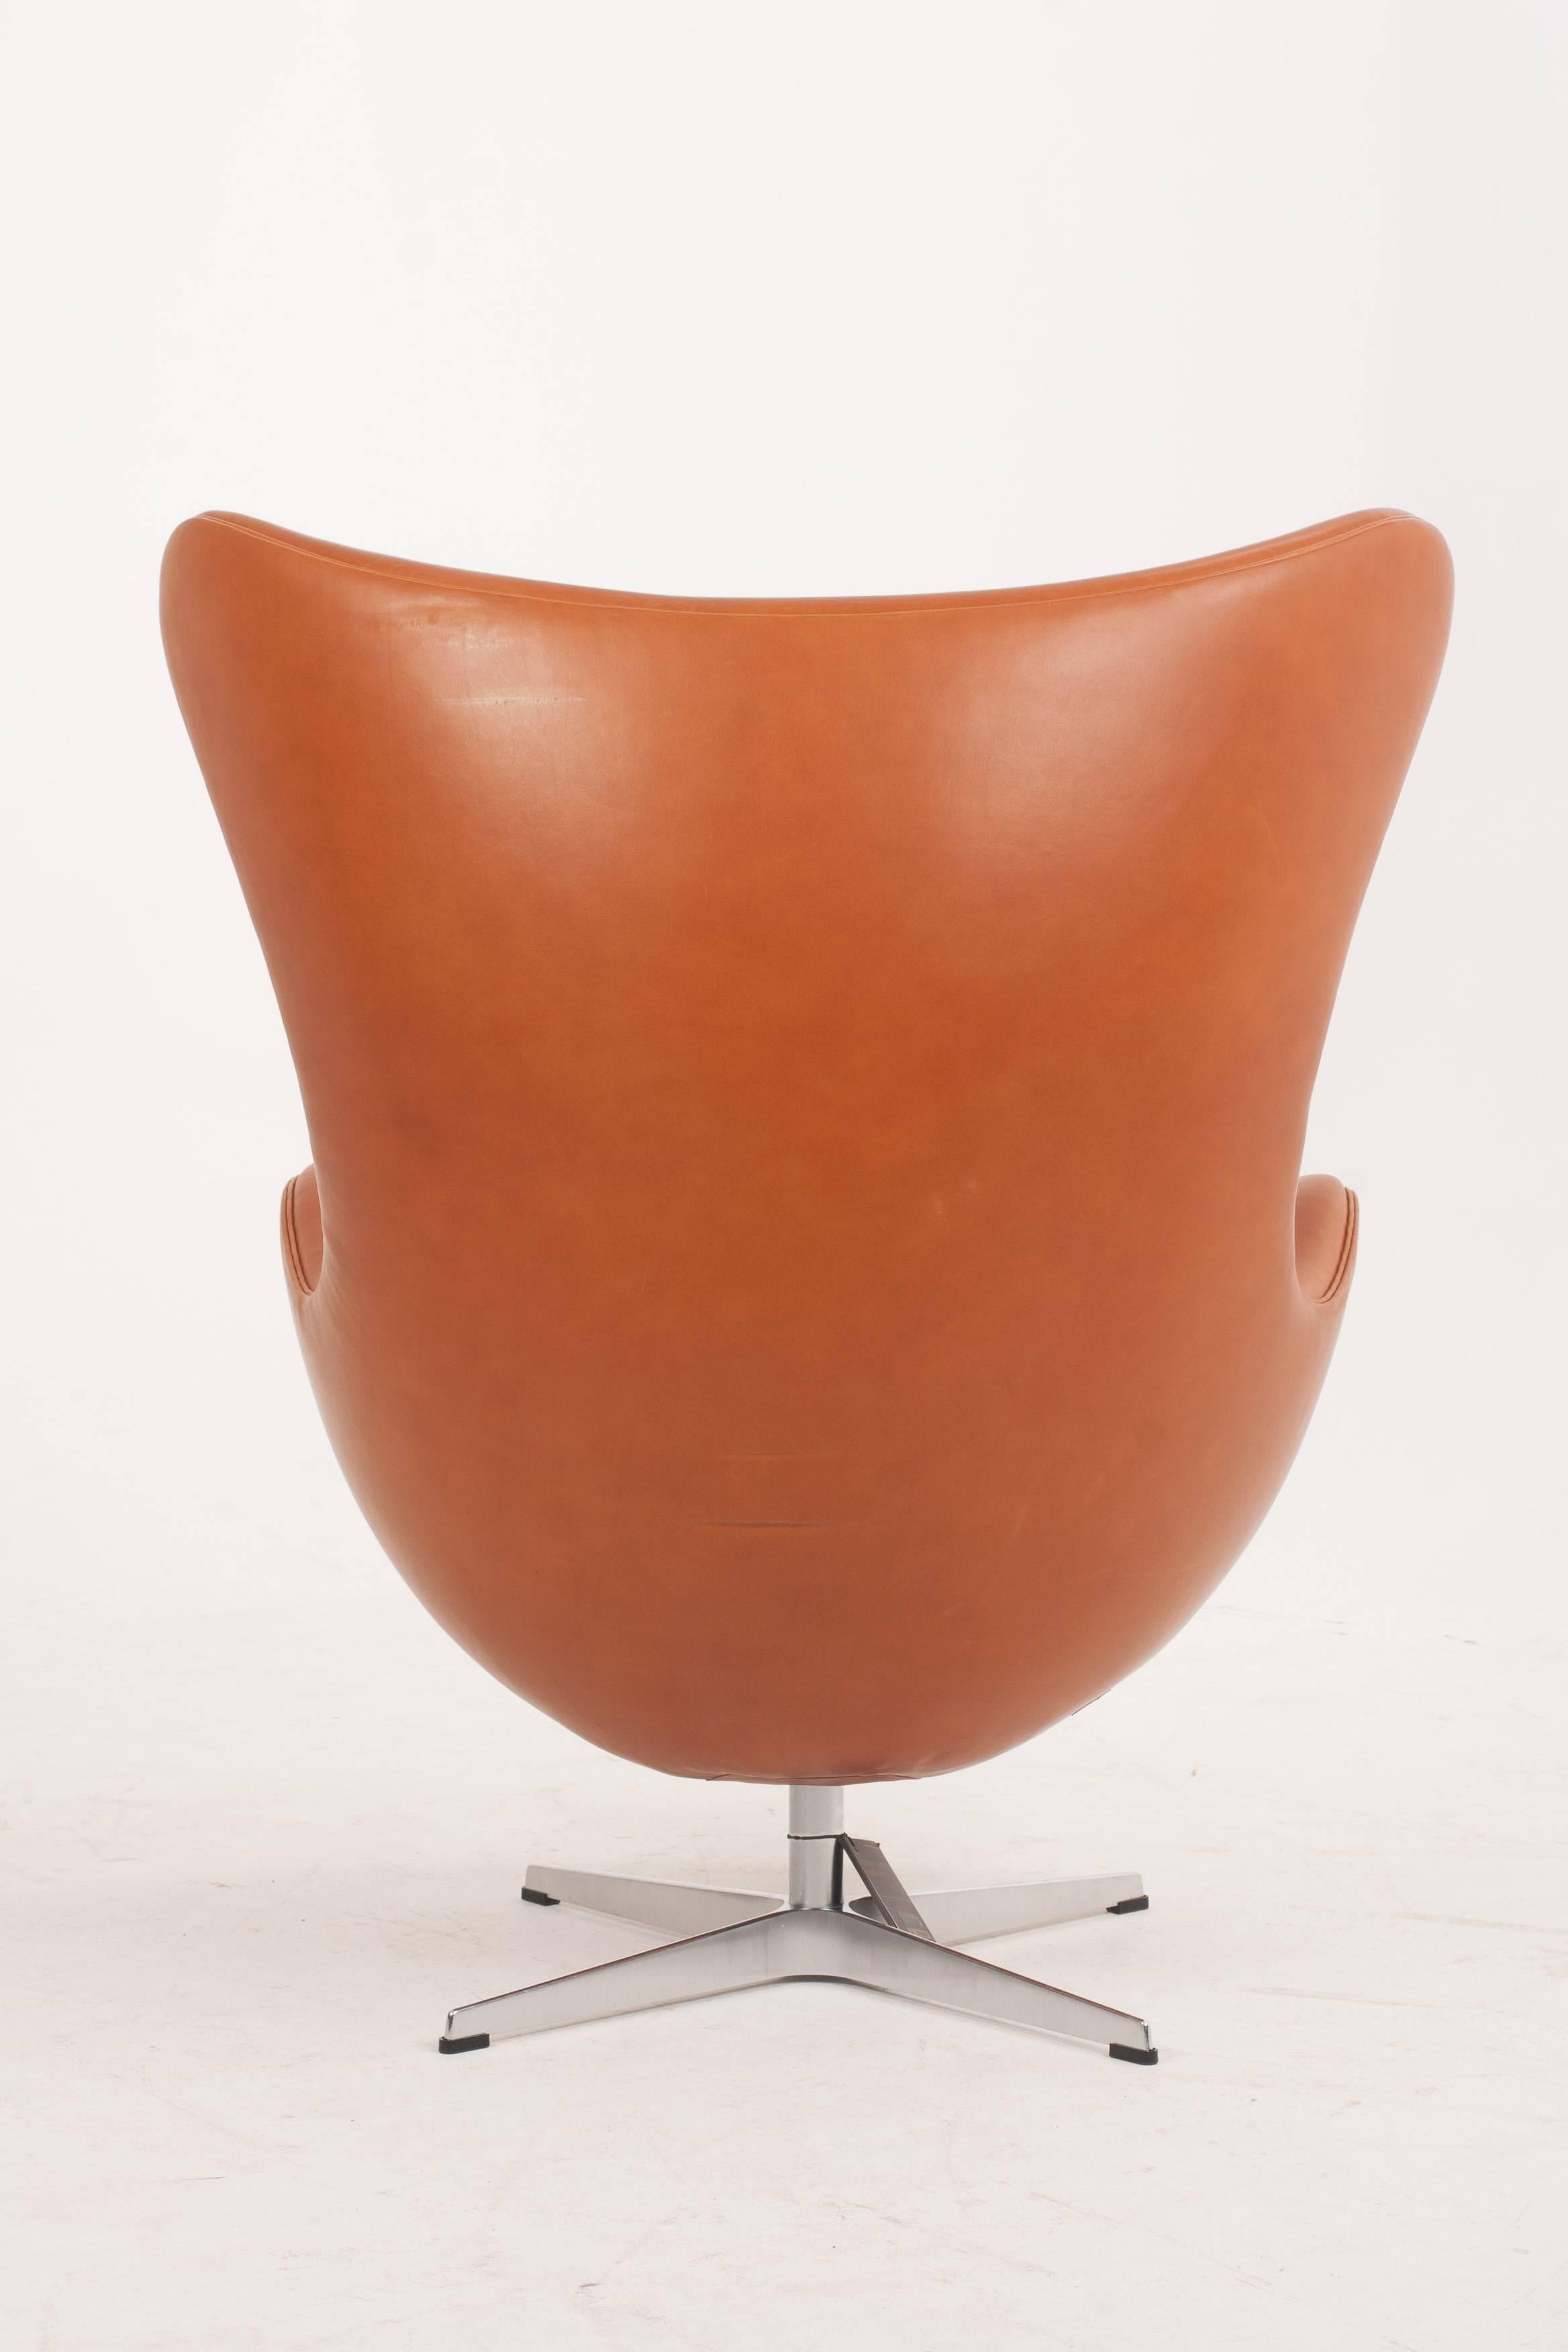 Danish Arne Jacobsen Egg Chair in Walnut Elegance Soft Leather for Fritz Hansen